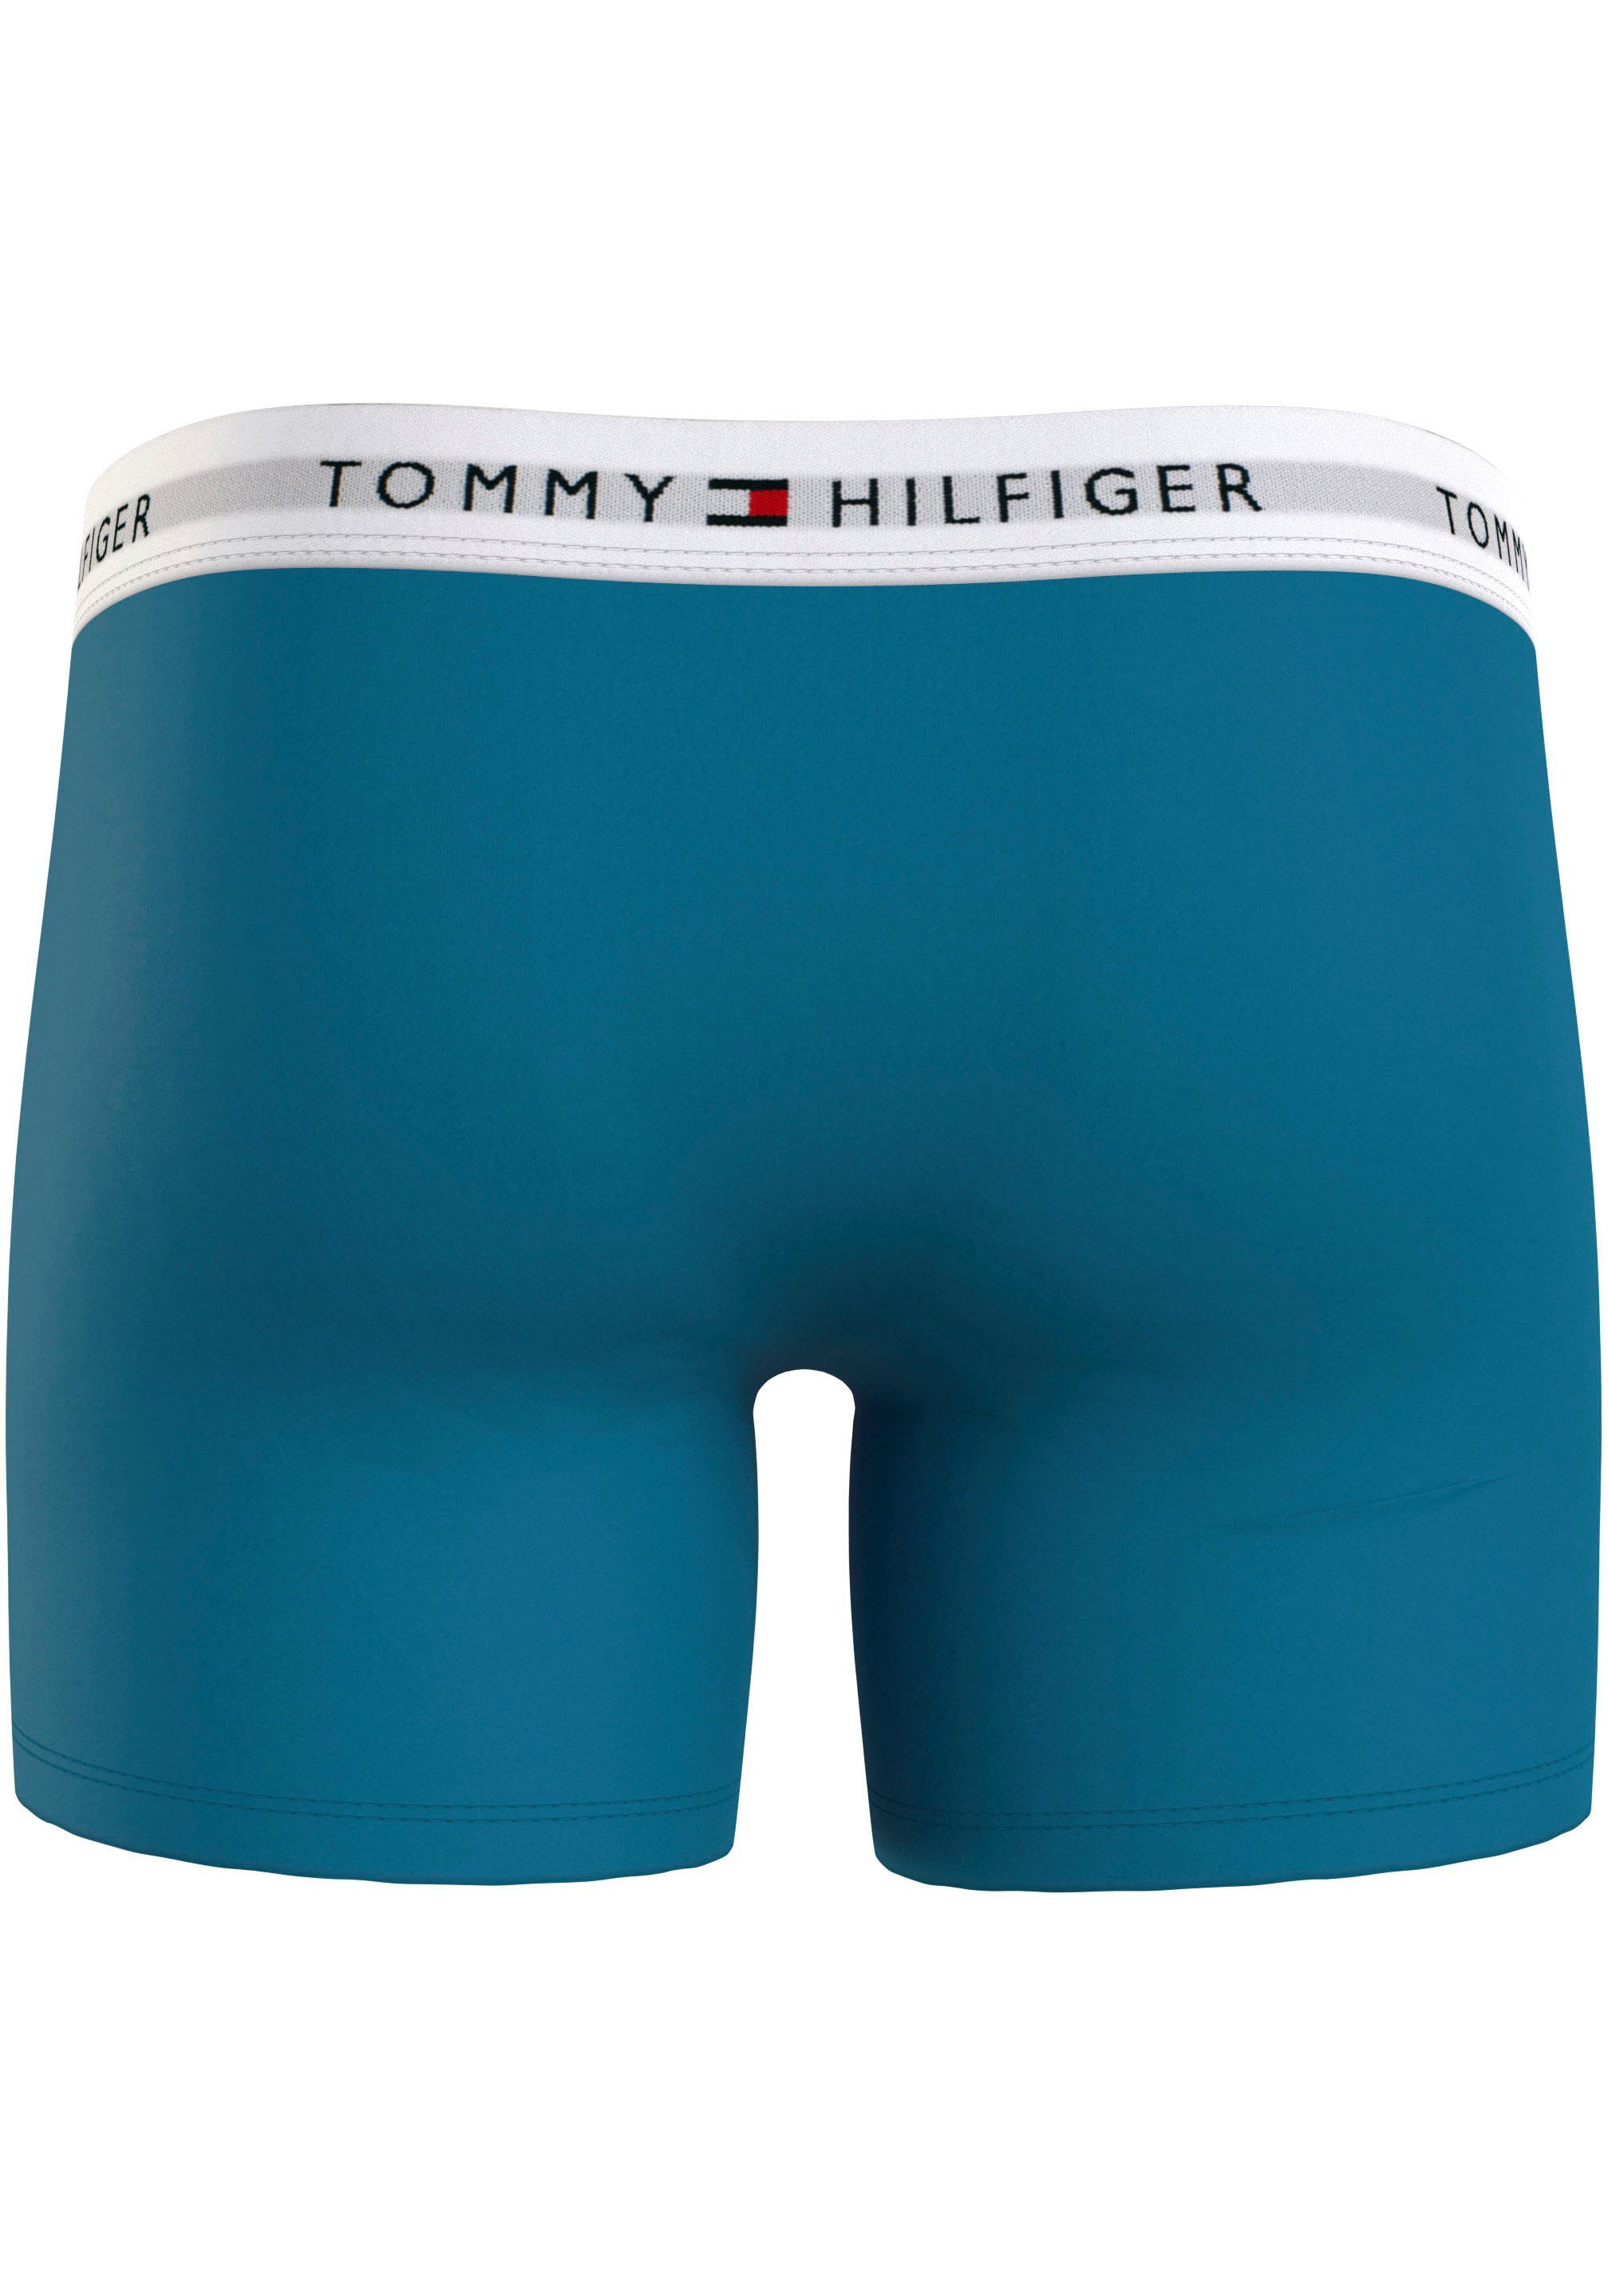 Aqua/Ant Logo-Elastikbund BRIEF Hilfiger 3er-Pack) Boxer Tommy Silver/Fireworks BOXER 3P Cerulean Underwear (Packung, mit